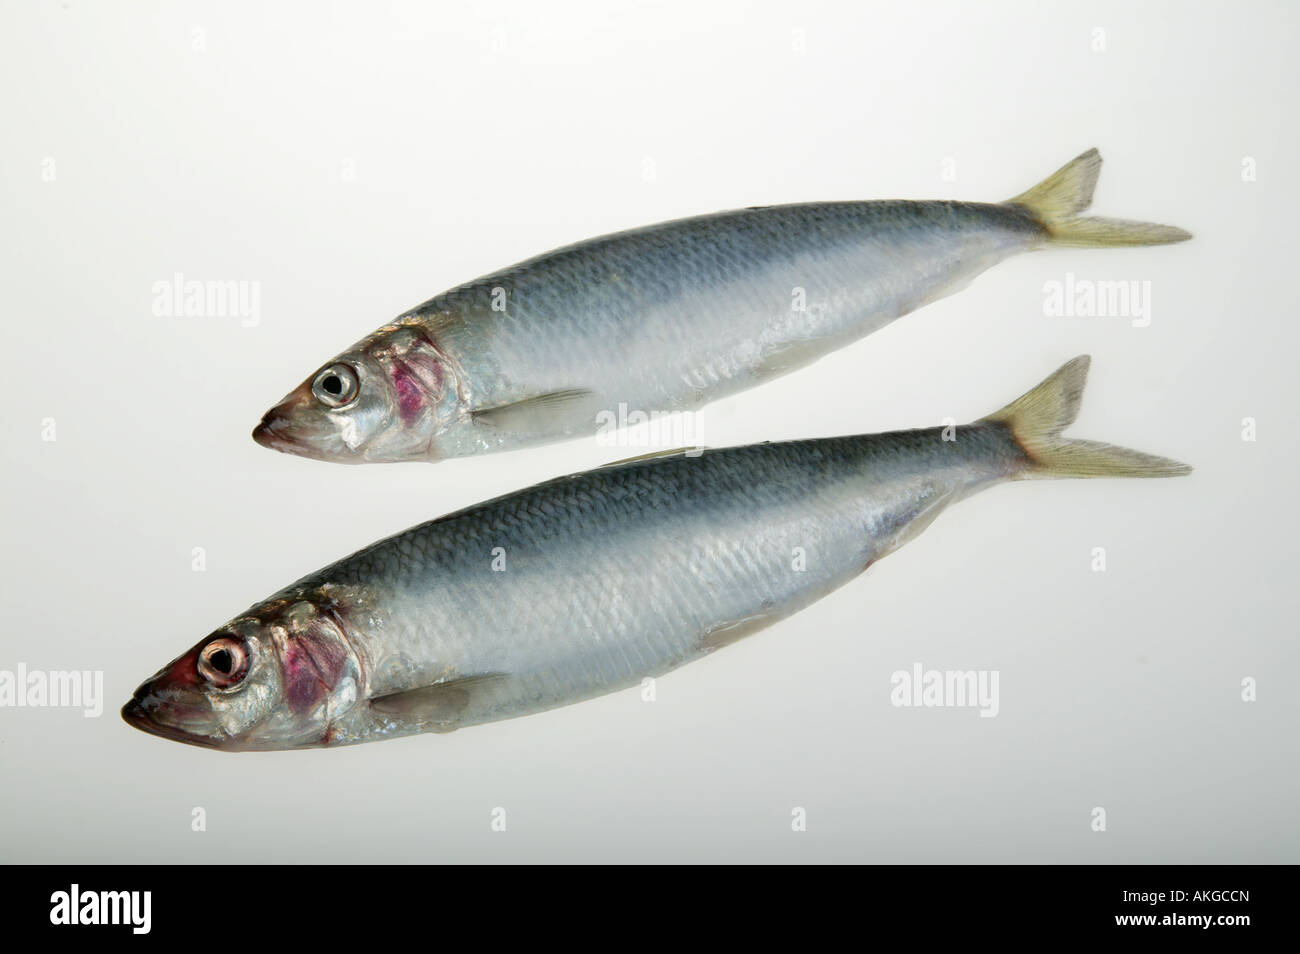 studio shot of herring fish Stock Photo